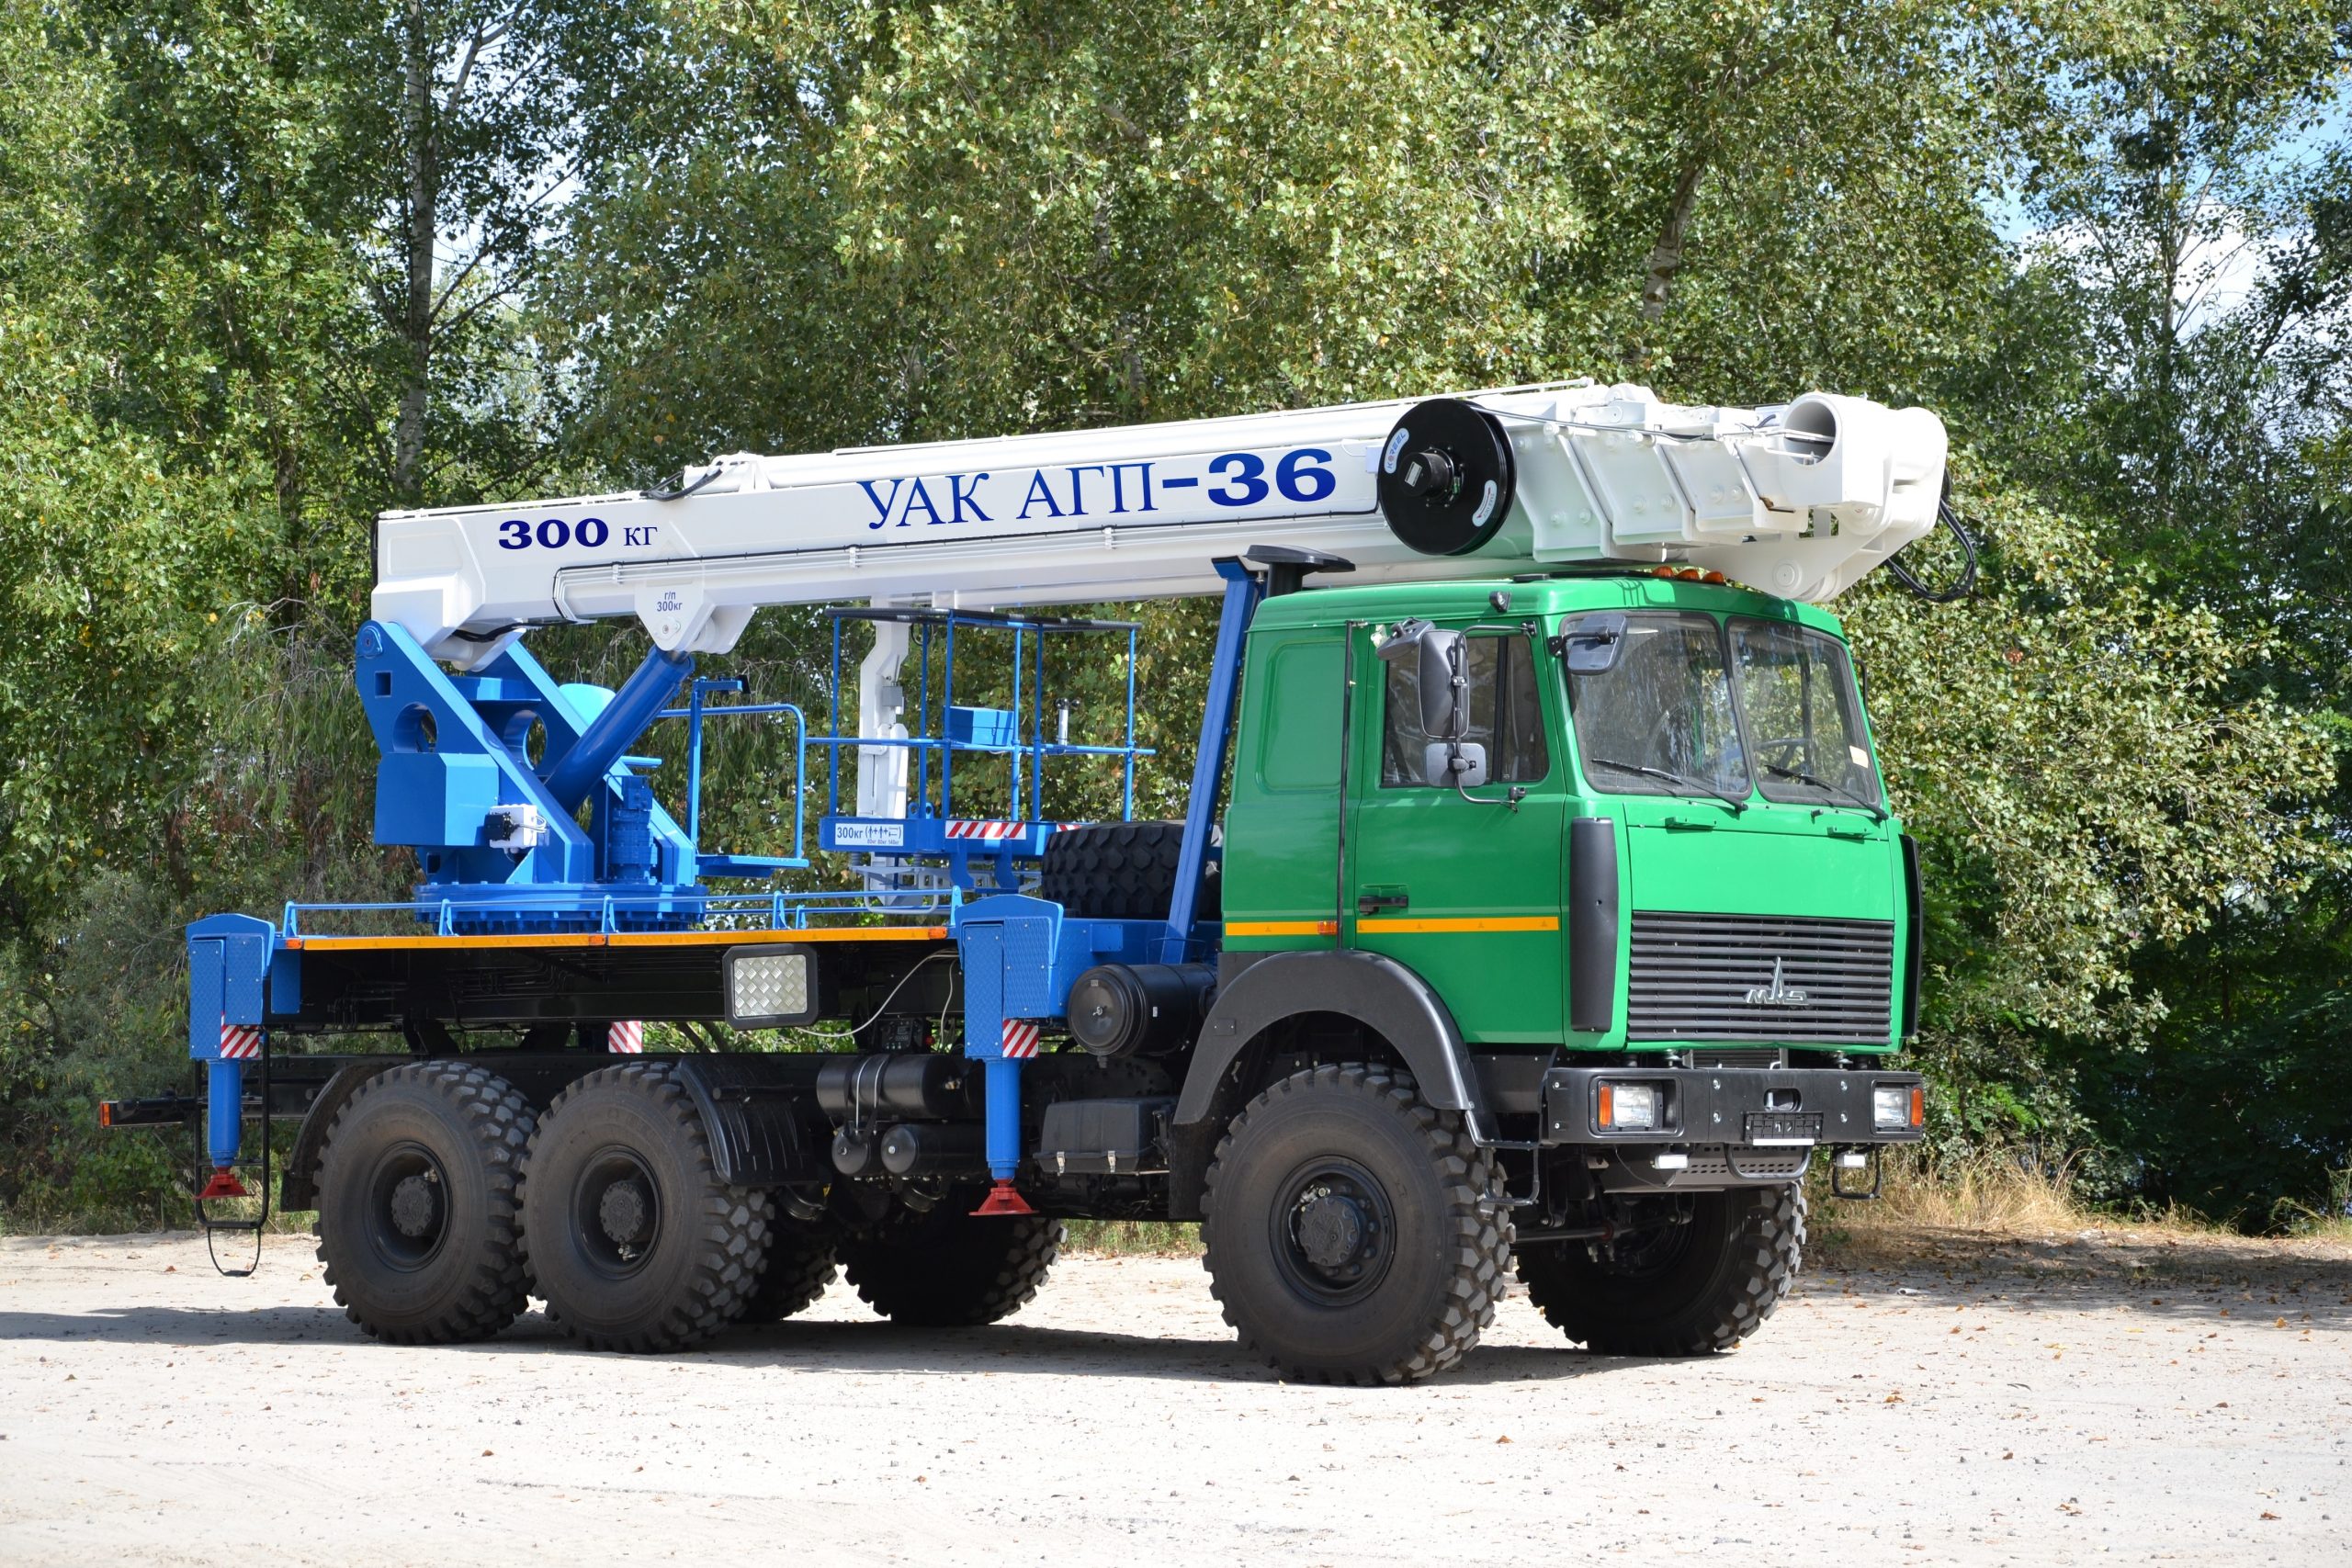 В Україні випустили автогідропідйомник УАК АГП-36 на шасі МАЗ 6317 6х6